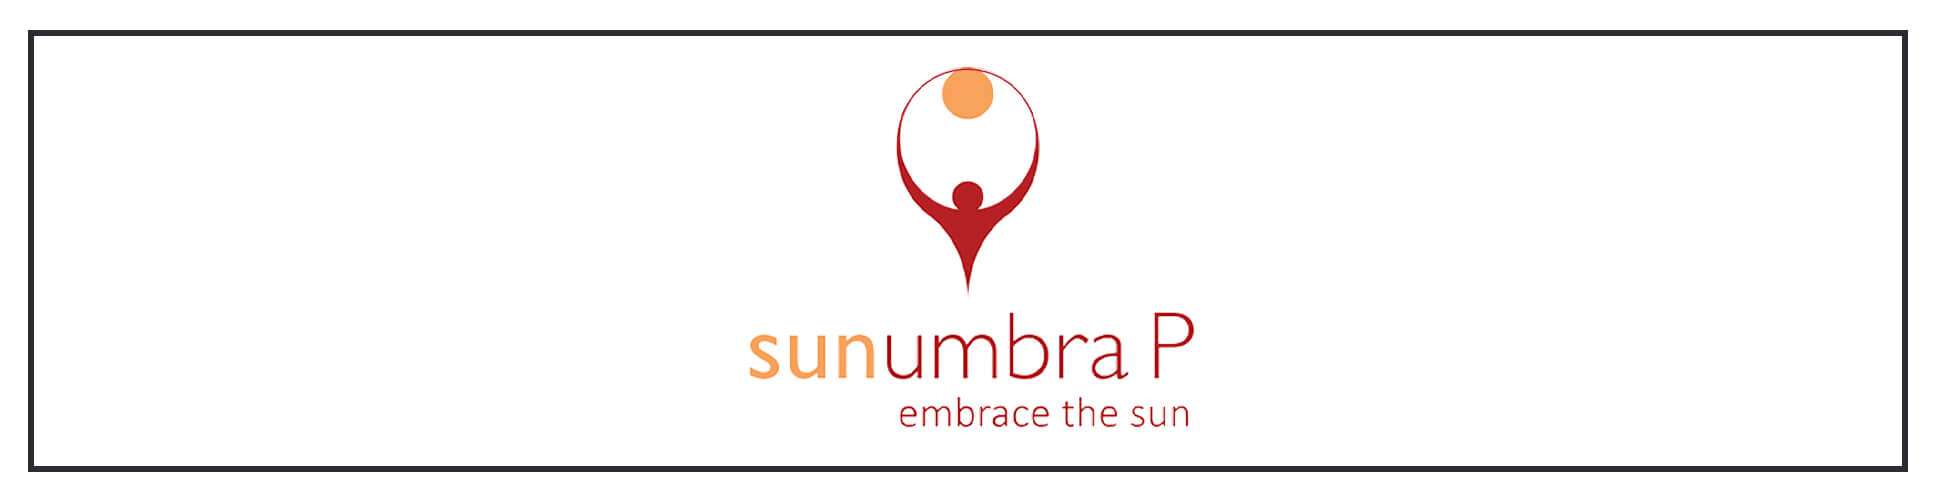 A logo for sunbura p.